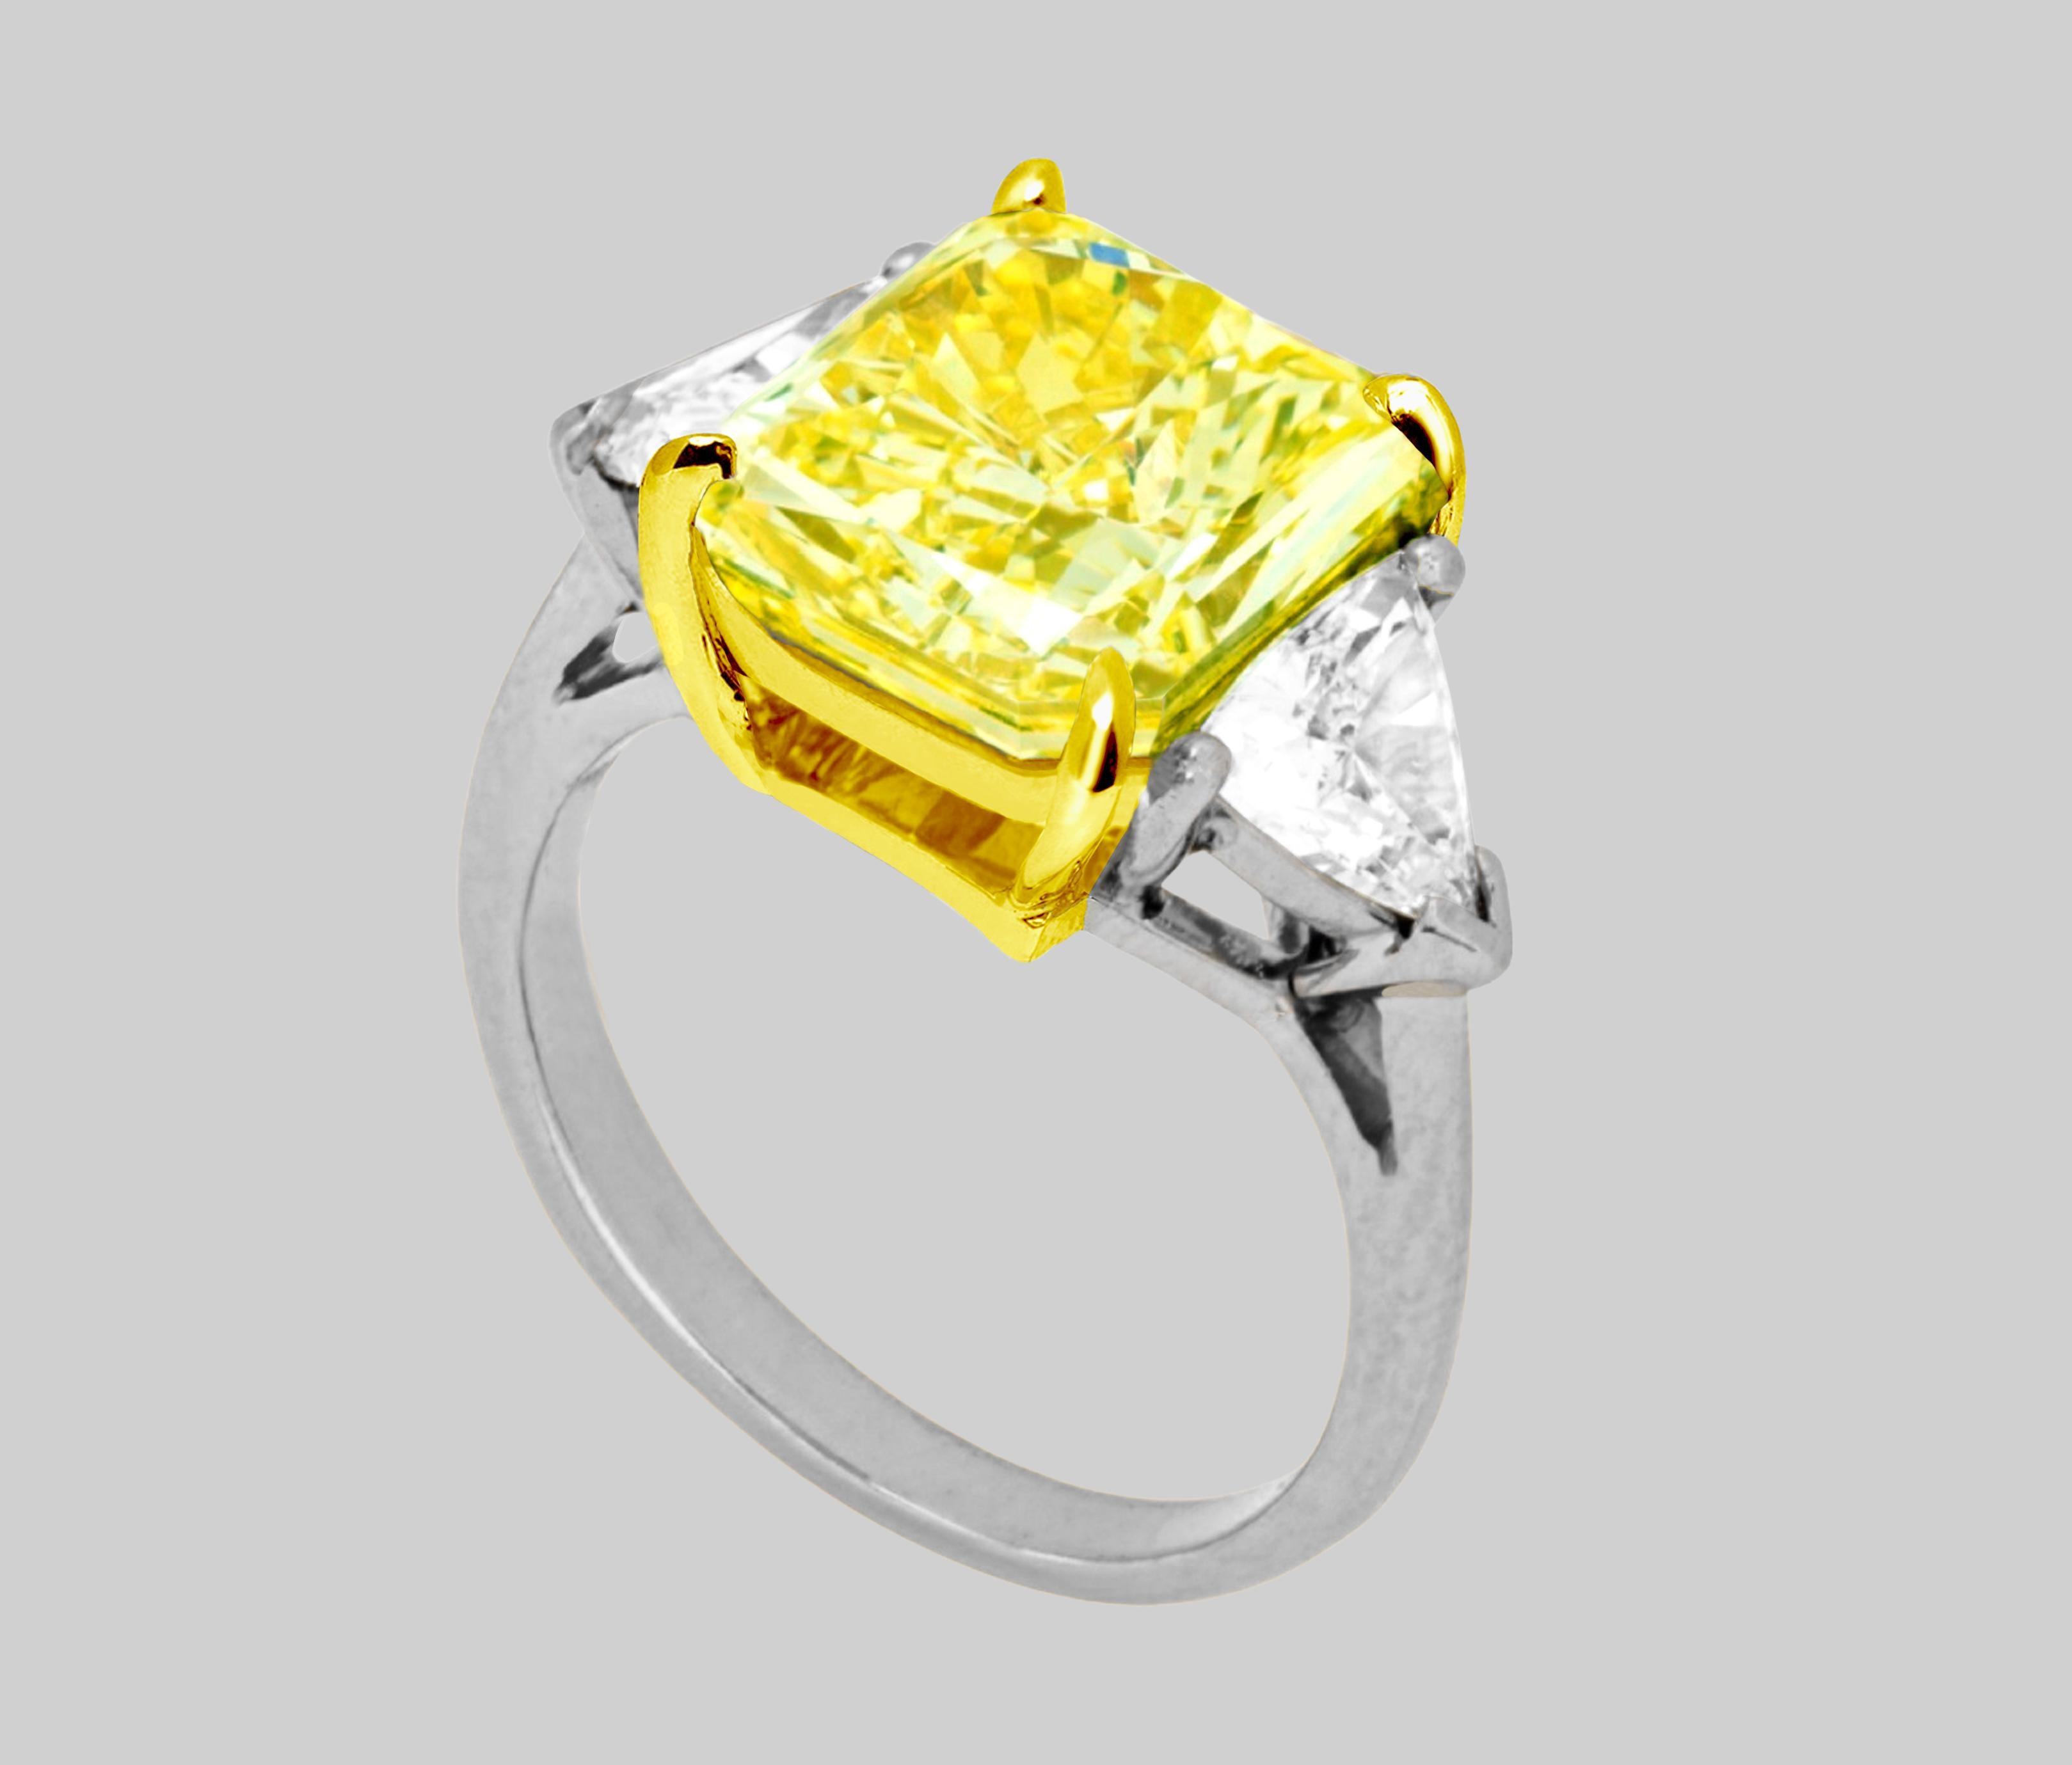 Bague en diamant certifié GIA de 4 carats, taille coussin, de couleur jaune intense fantaisie
